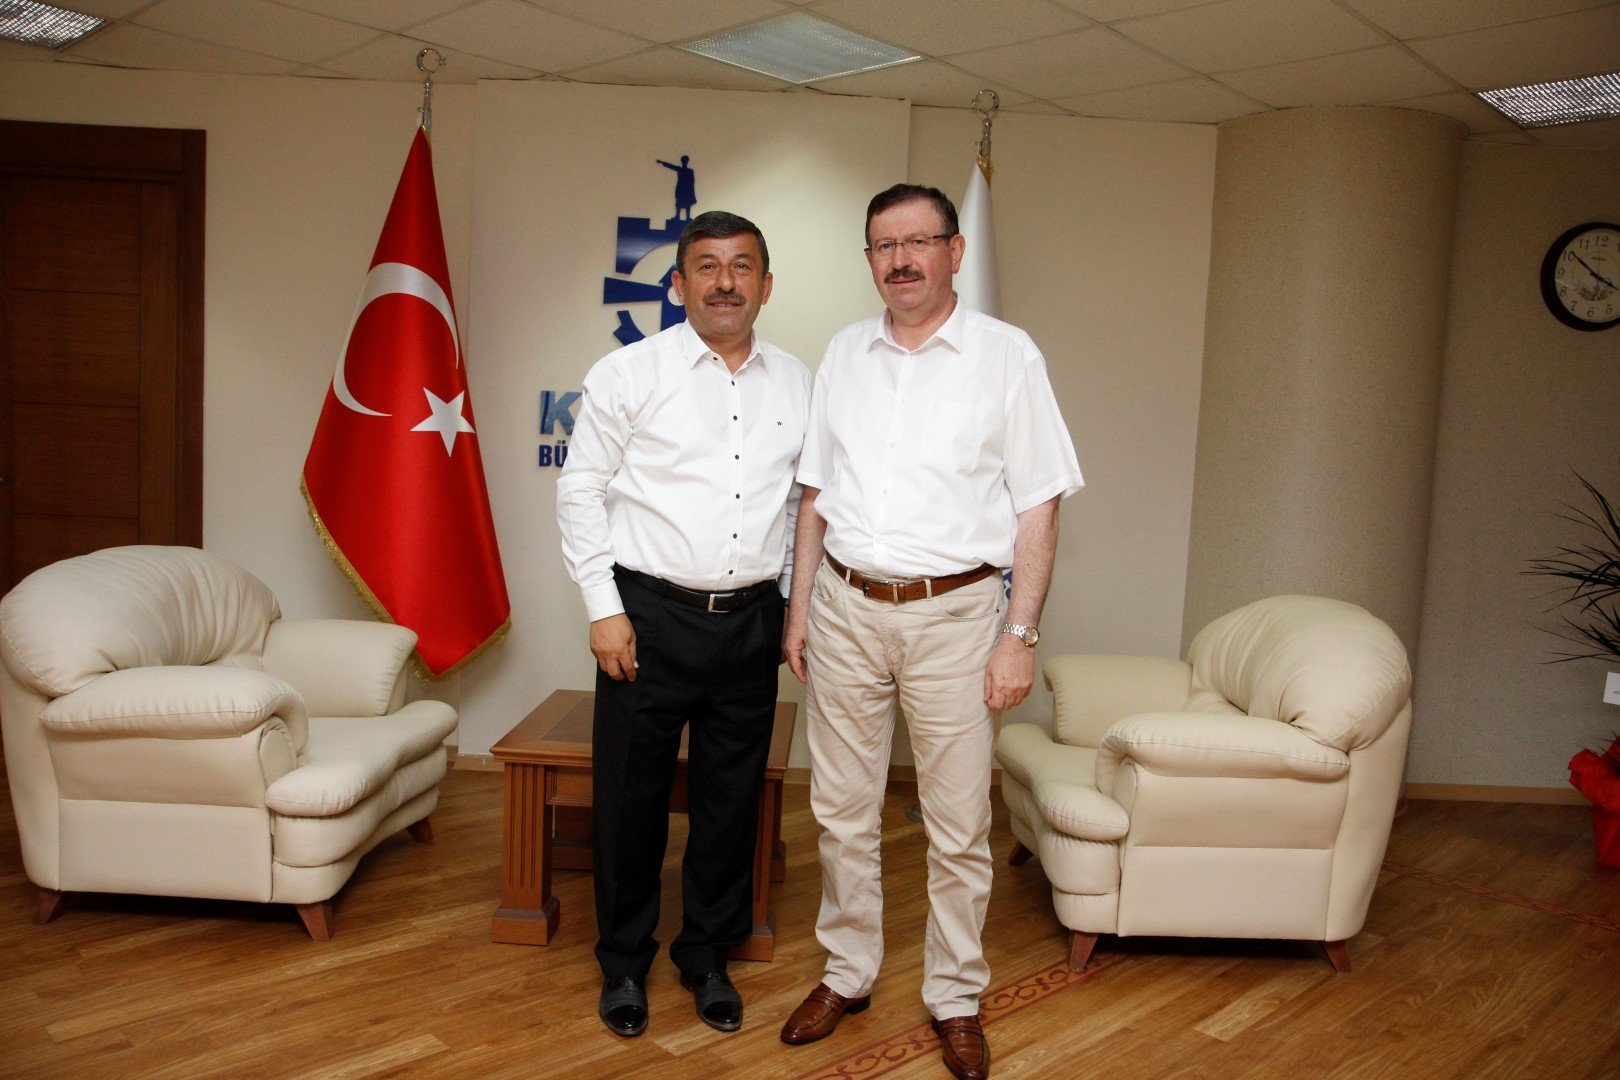 İlhan Bayram, Başkan Karabacak'ı konuk etti